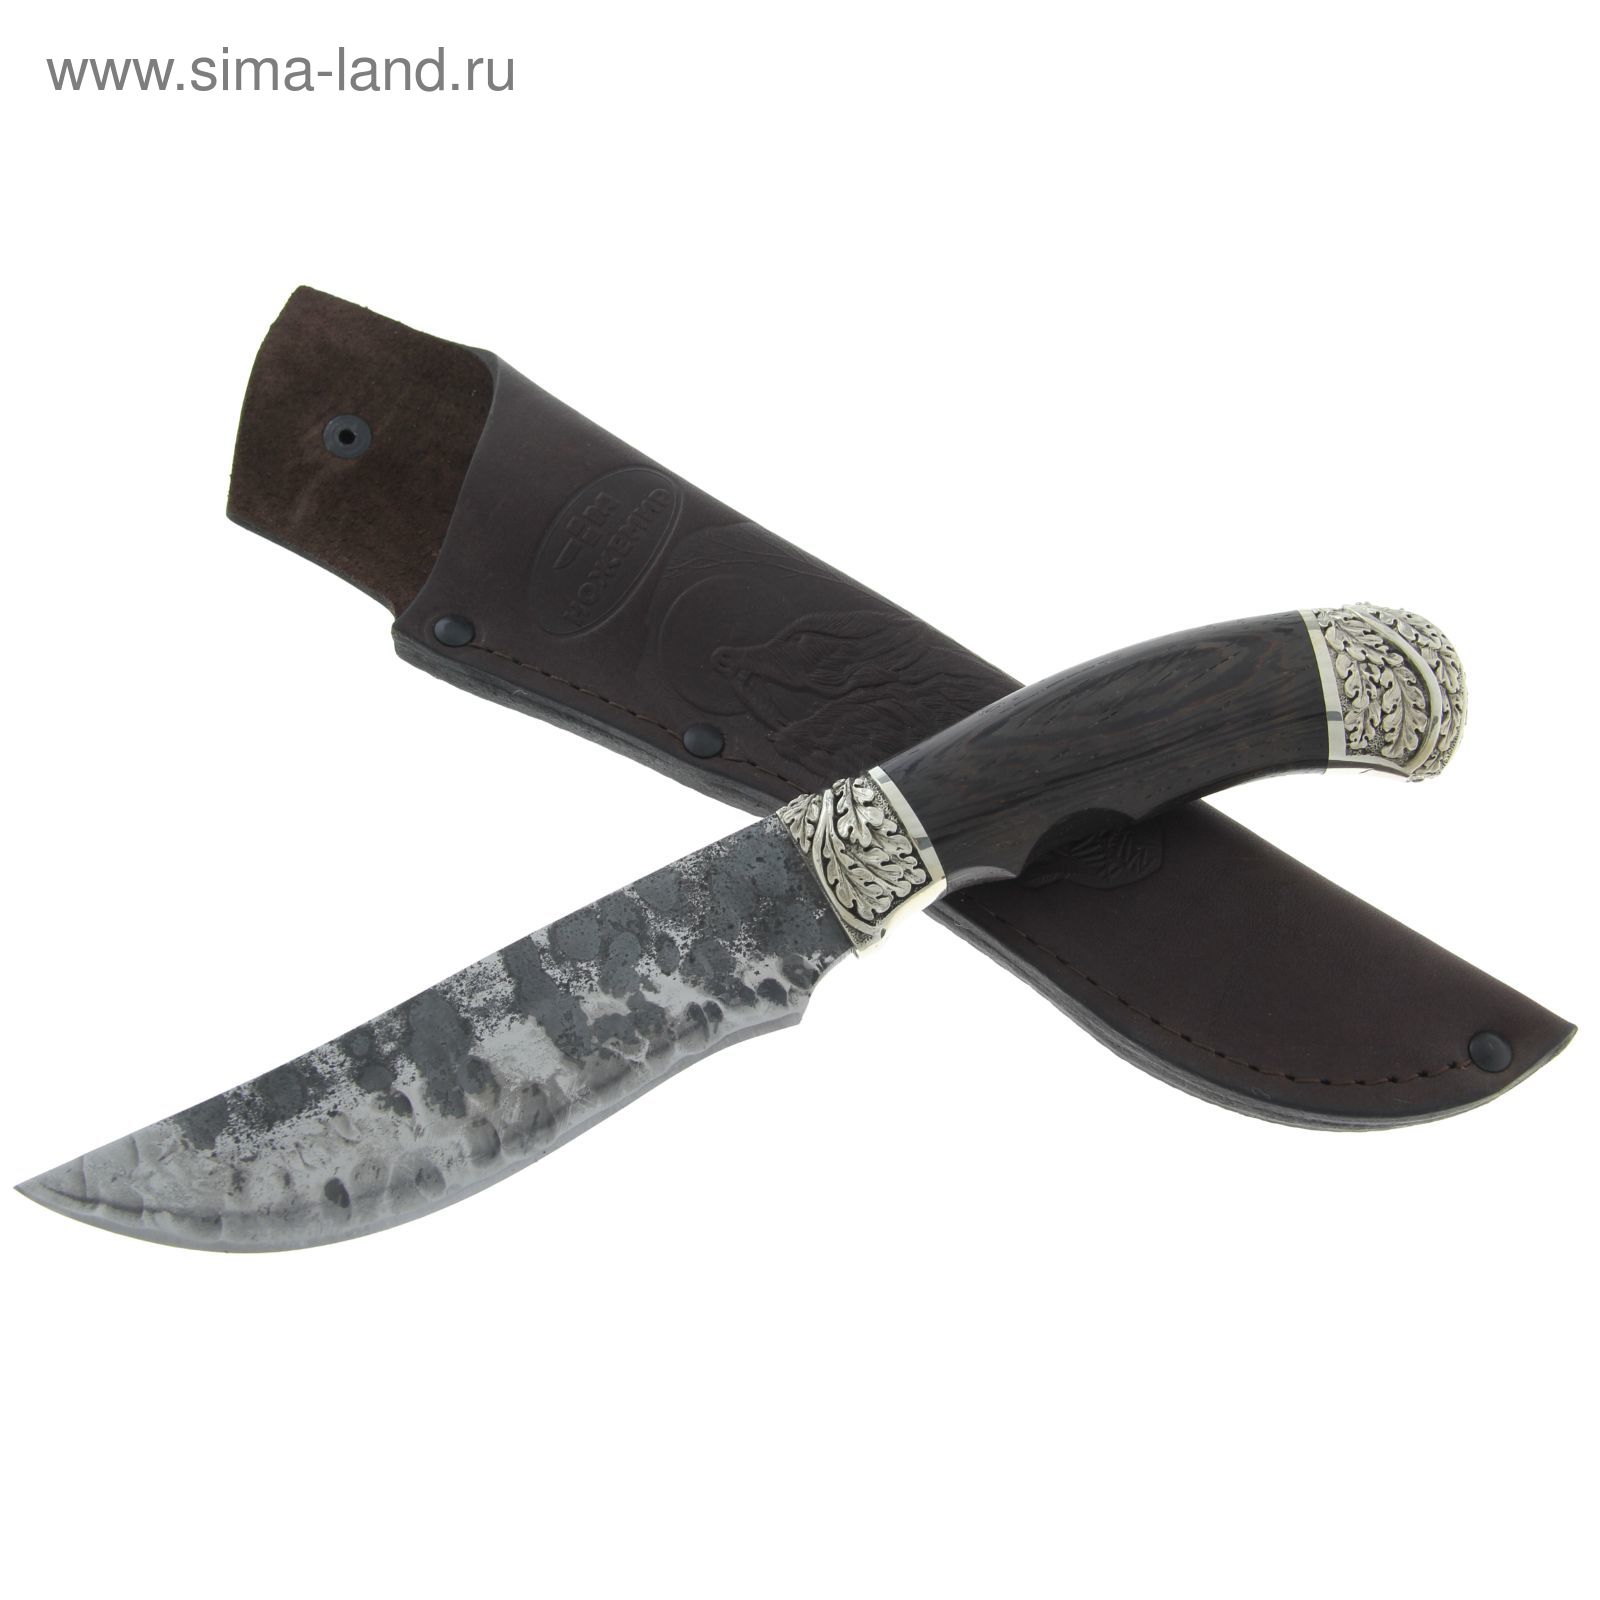 Нож "Орлан" (8012)9хс, рукоять-венге, инструментальная сталь